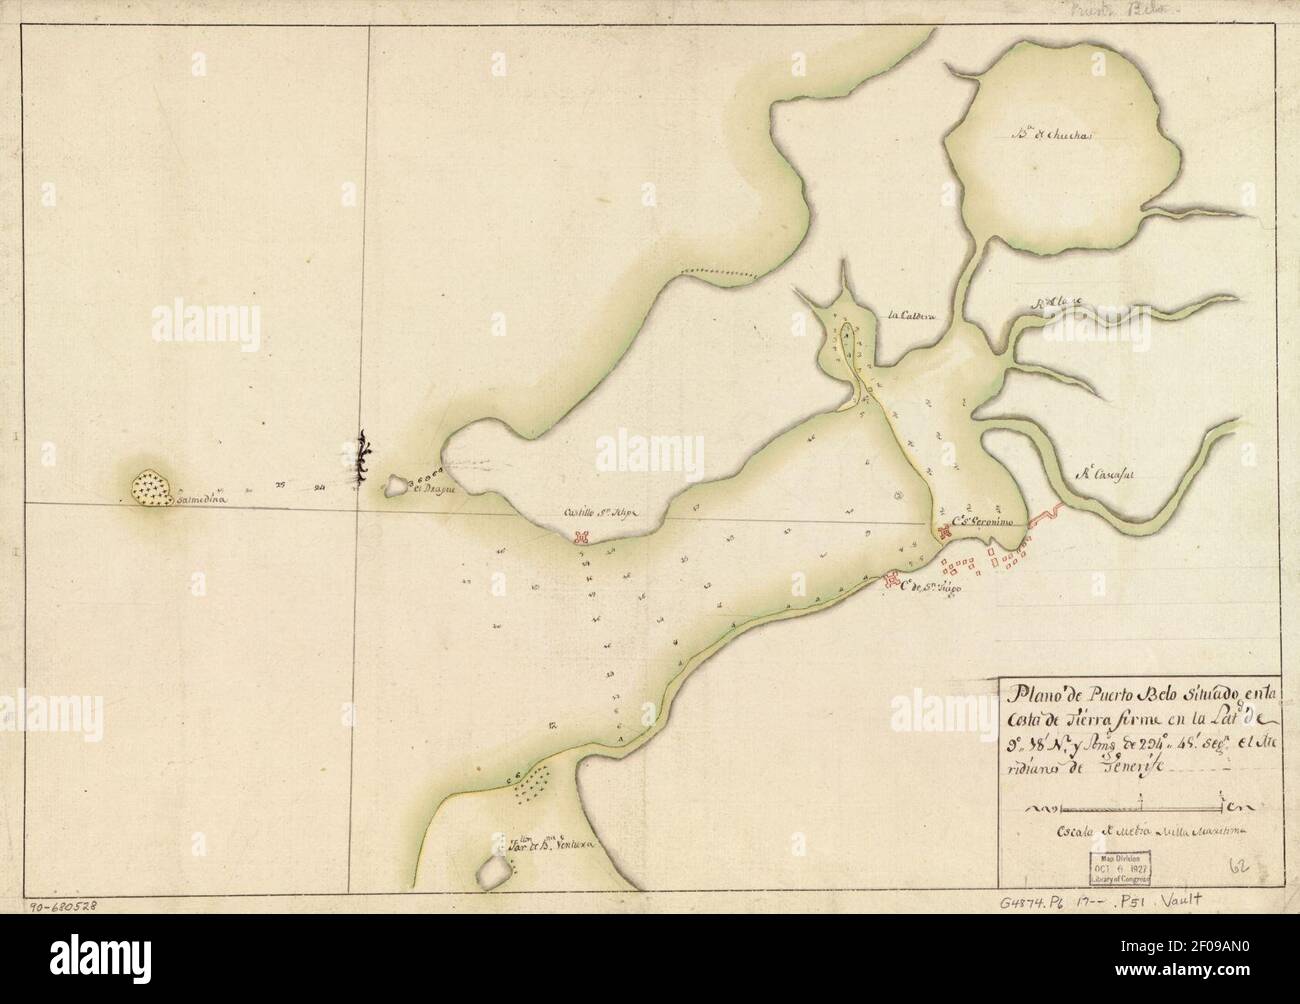 Plano del puerto de Sta. Marta situado en la costa de Tierra Firme en 11  grs. 16 ms. de latitud N. y en la longitud de 302 grs. y 23 ms., meridiano